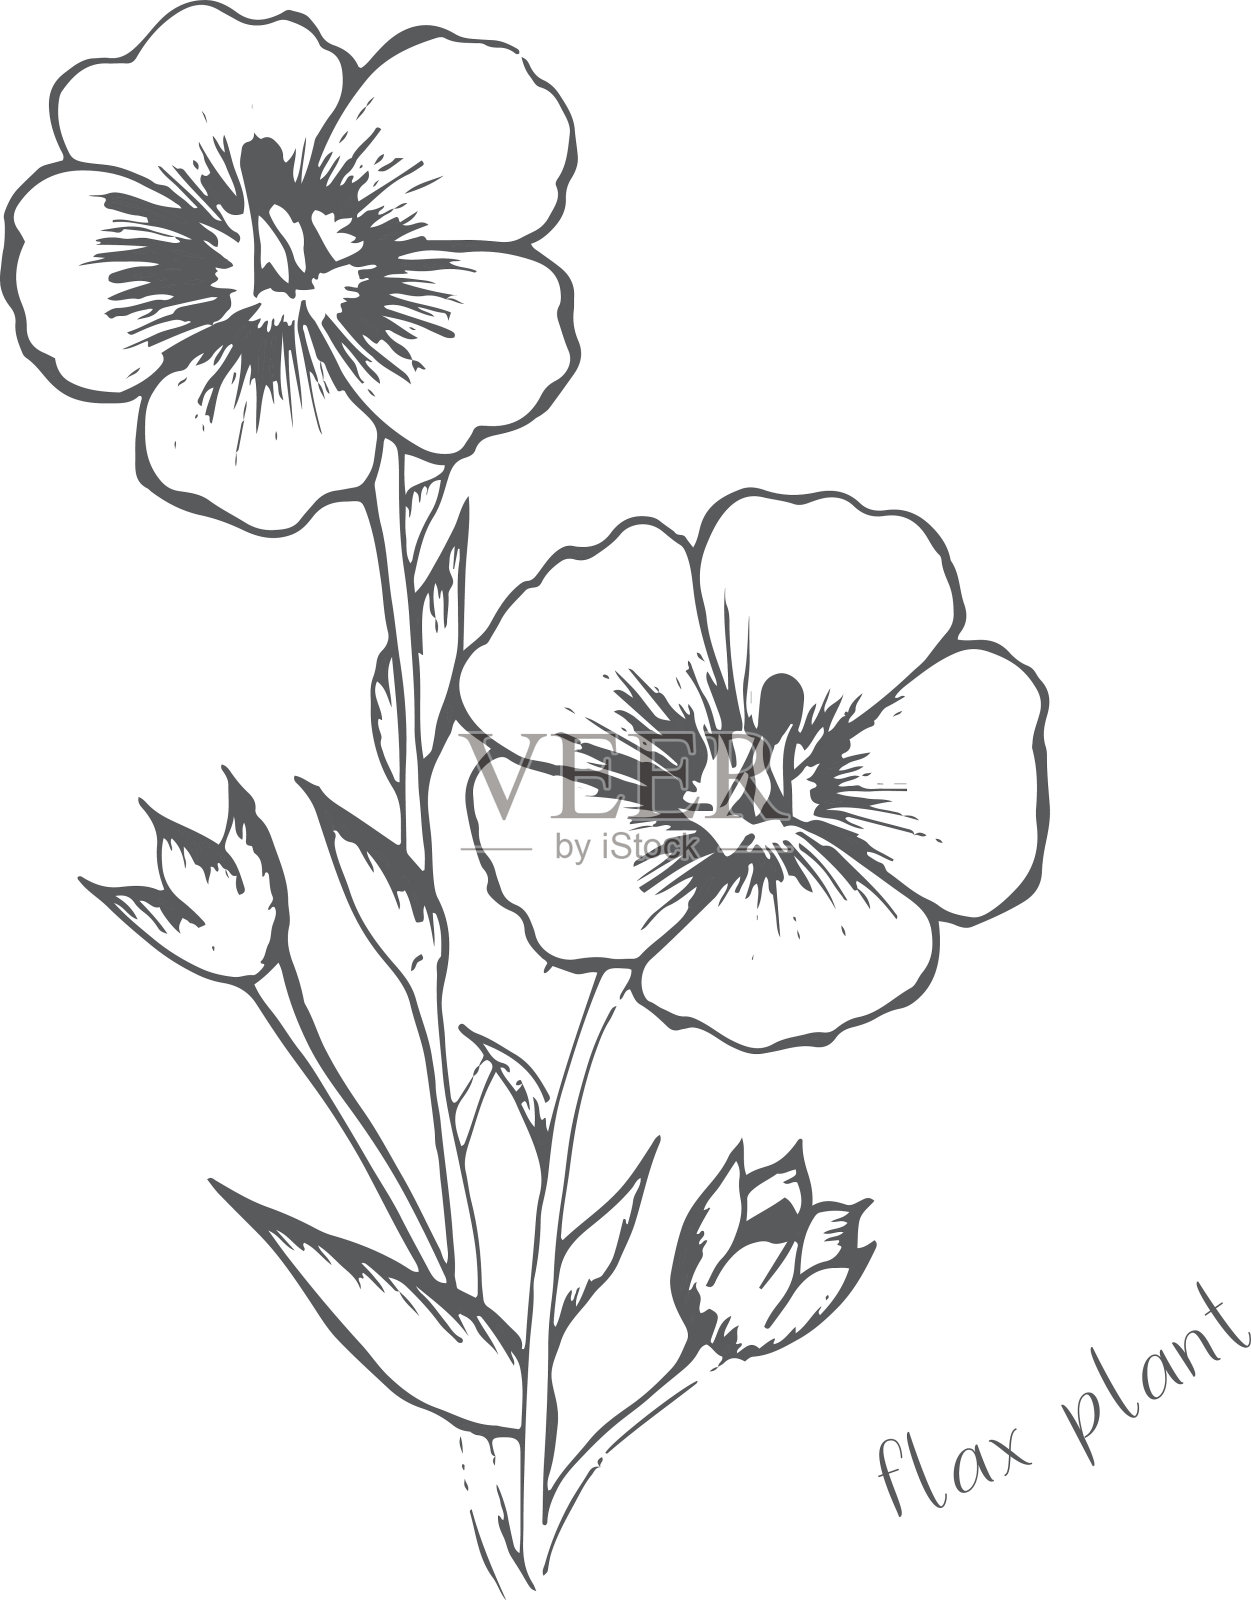 亚麻花是用一种颜色手绘的插画图片素材